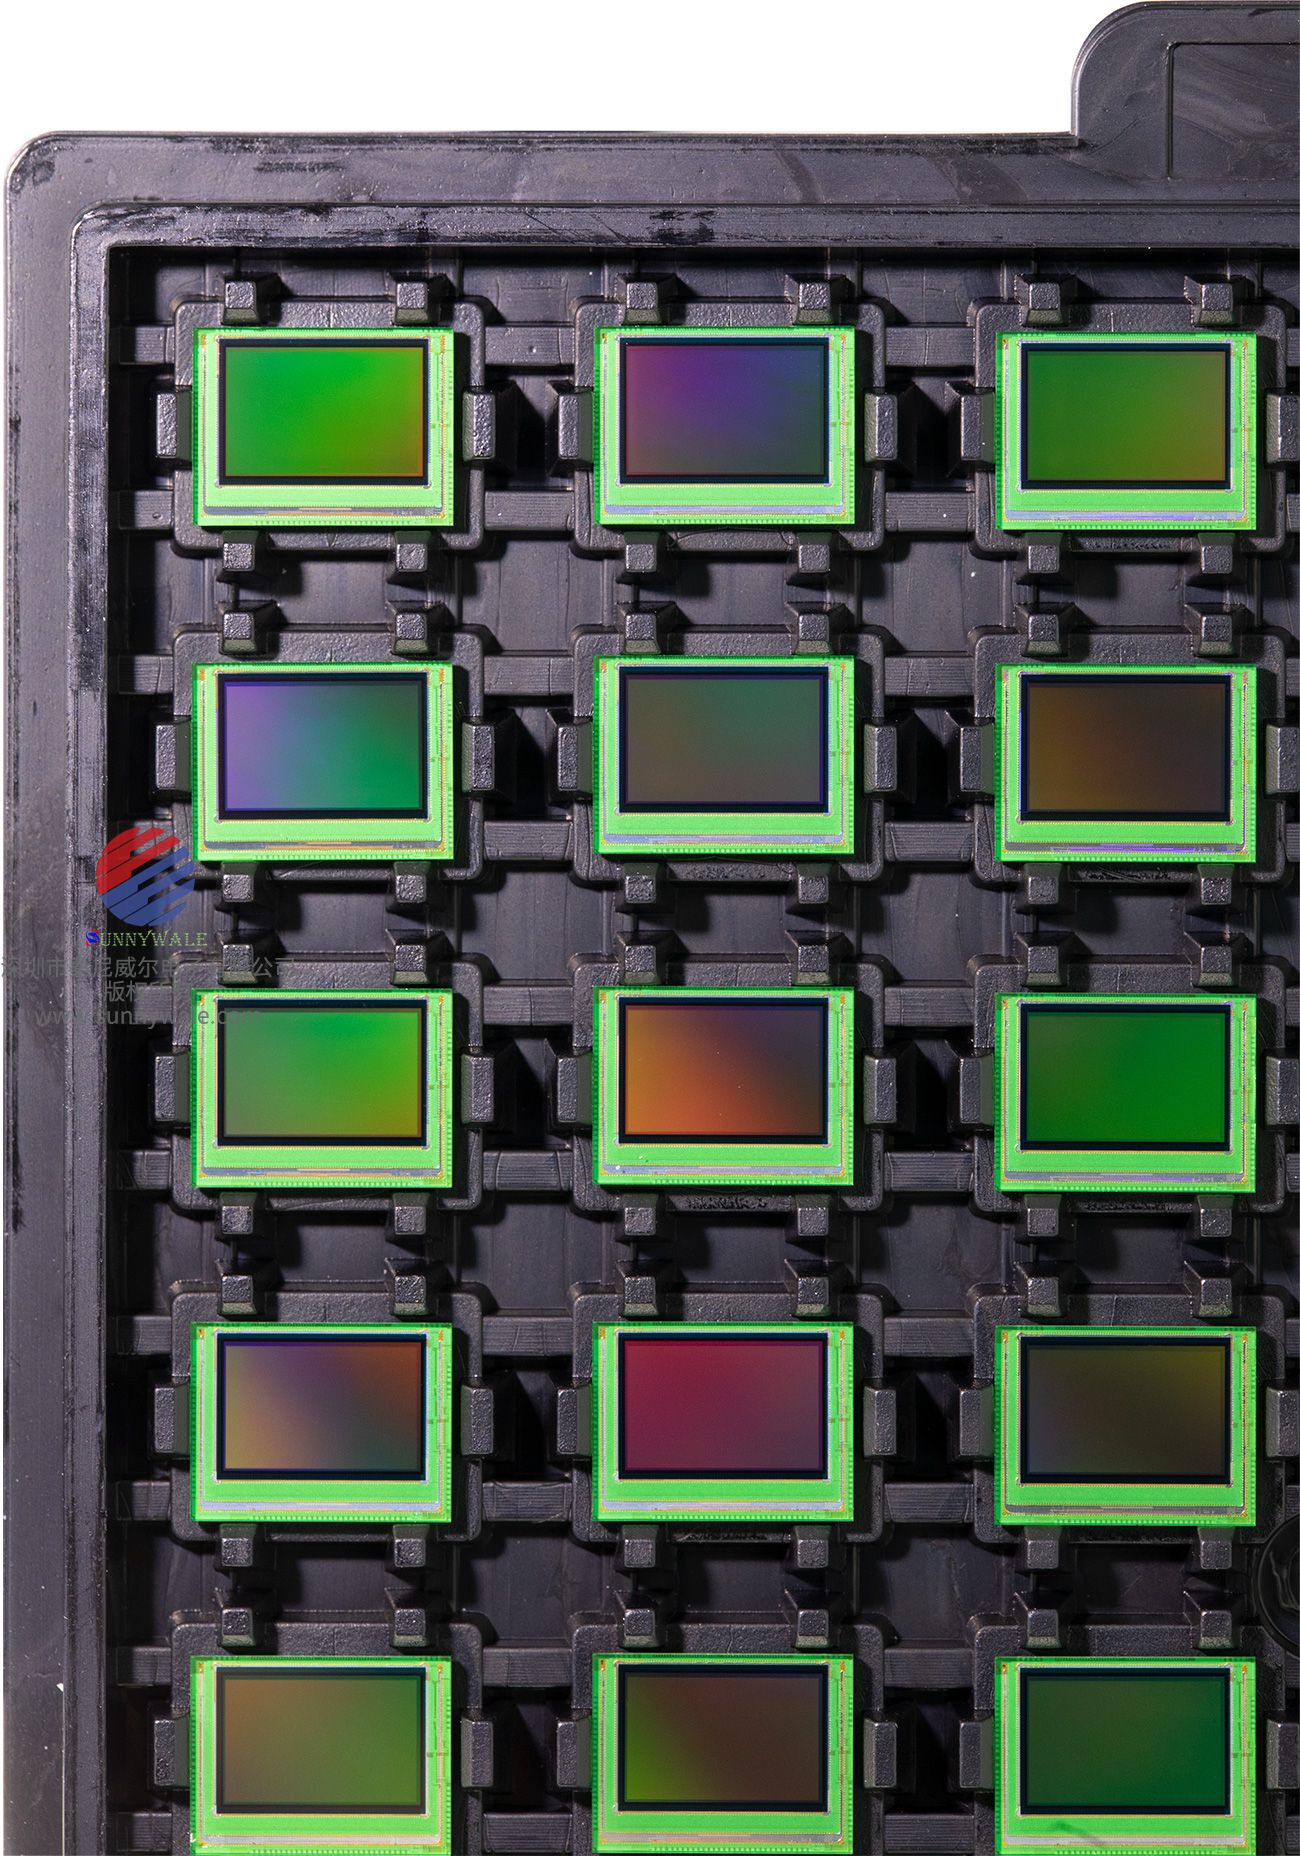 方形像素CMOS彩色图像传感器